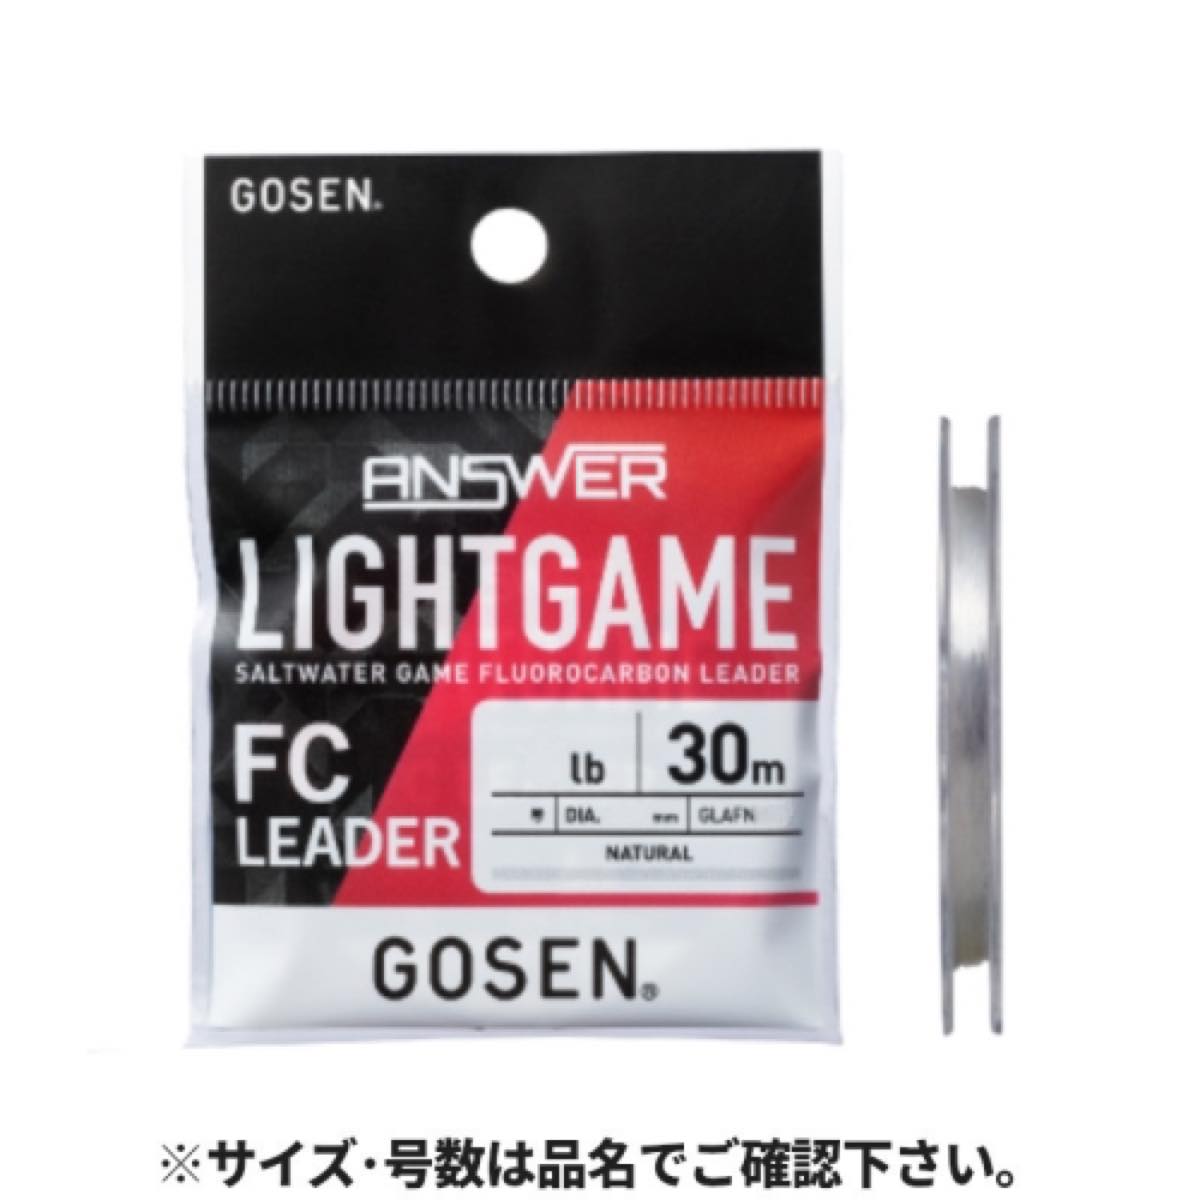 ゴーセン(GOSEN) アンサー ライトゲーム FC リーダー 30m 5lb ナチュラル GLAFN0312 ネコポス(メール便)対象商品